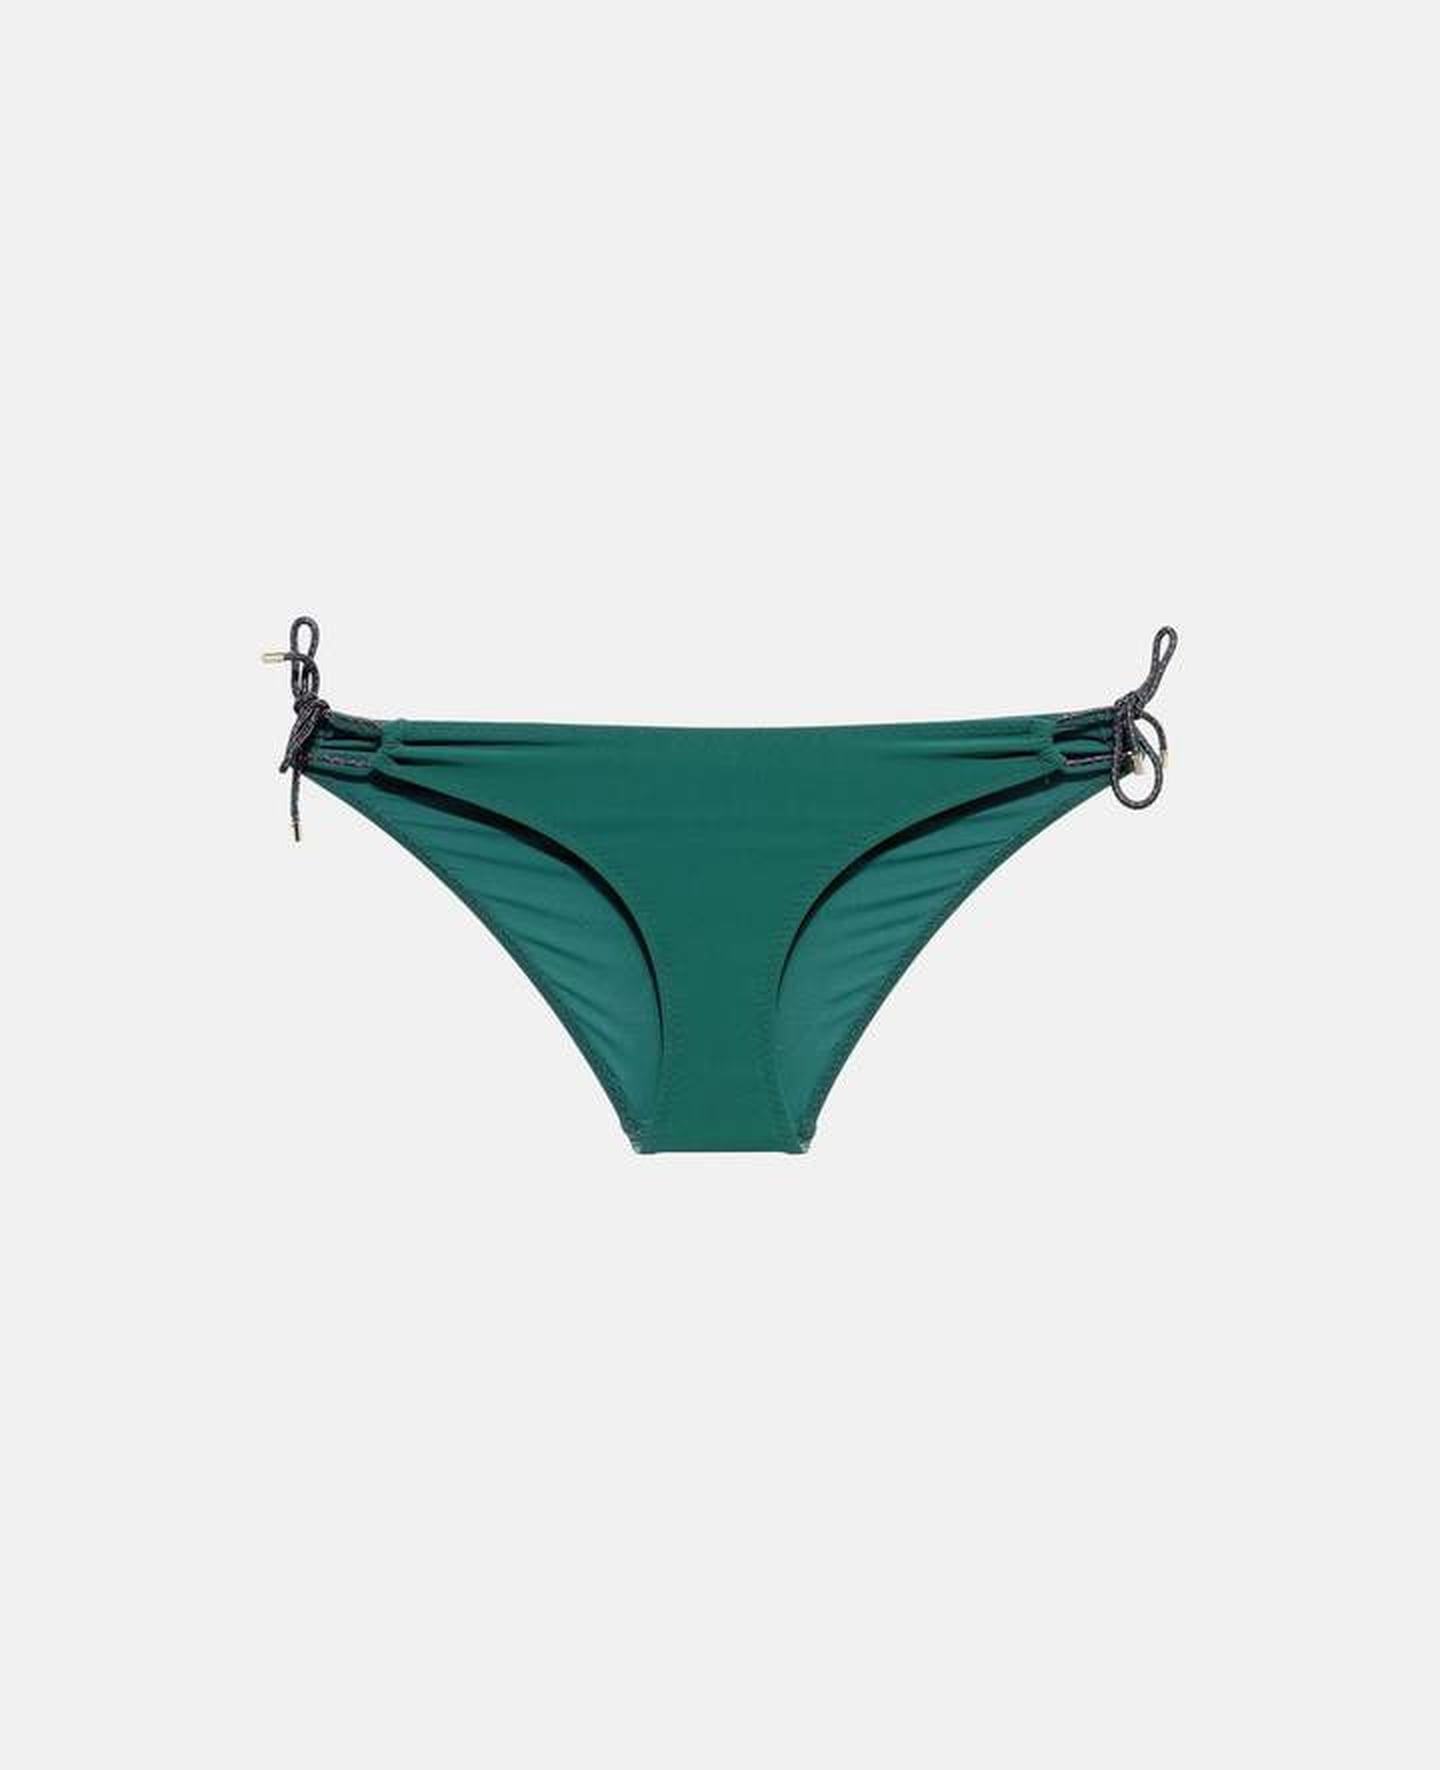 Hailey Baldwin Green Strappy Bikini | POPSUGAR Fashion